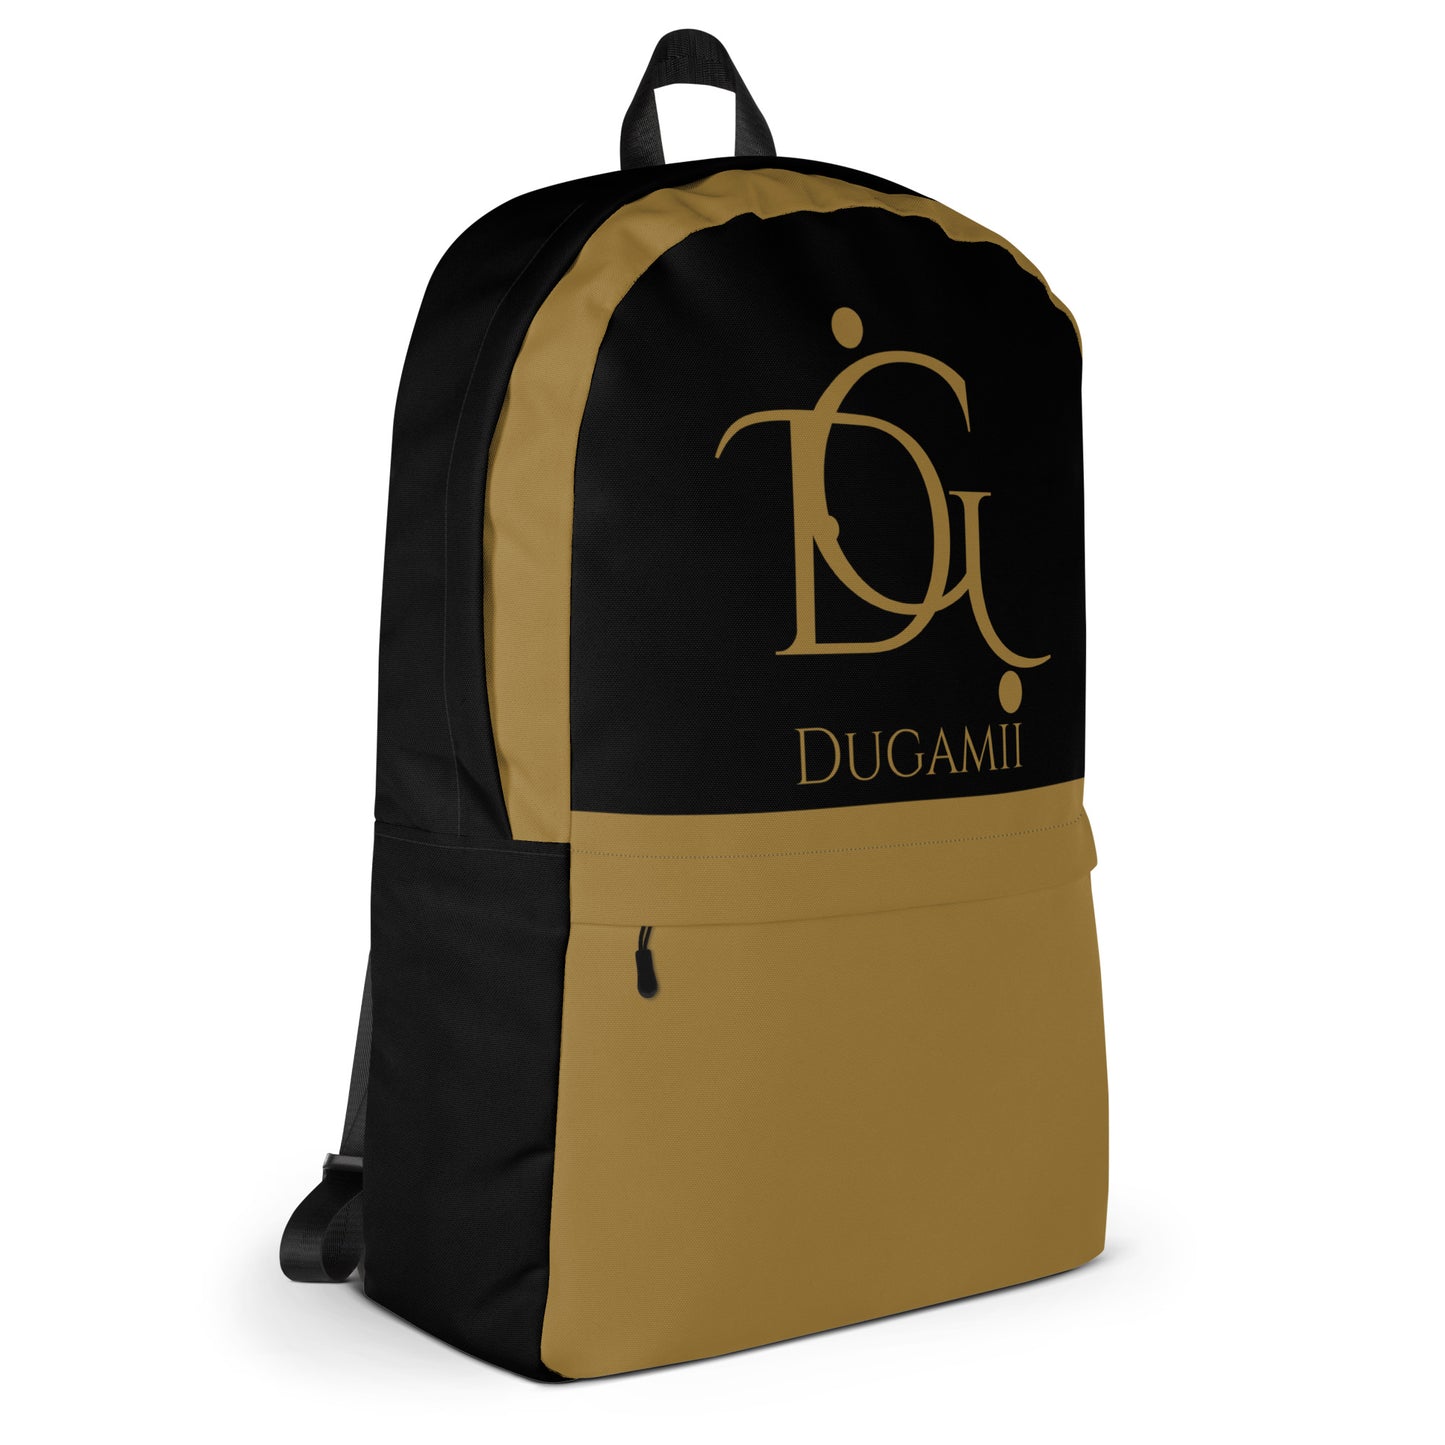 DuGamii Logo Printed Backpack